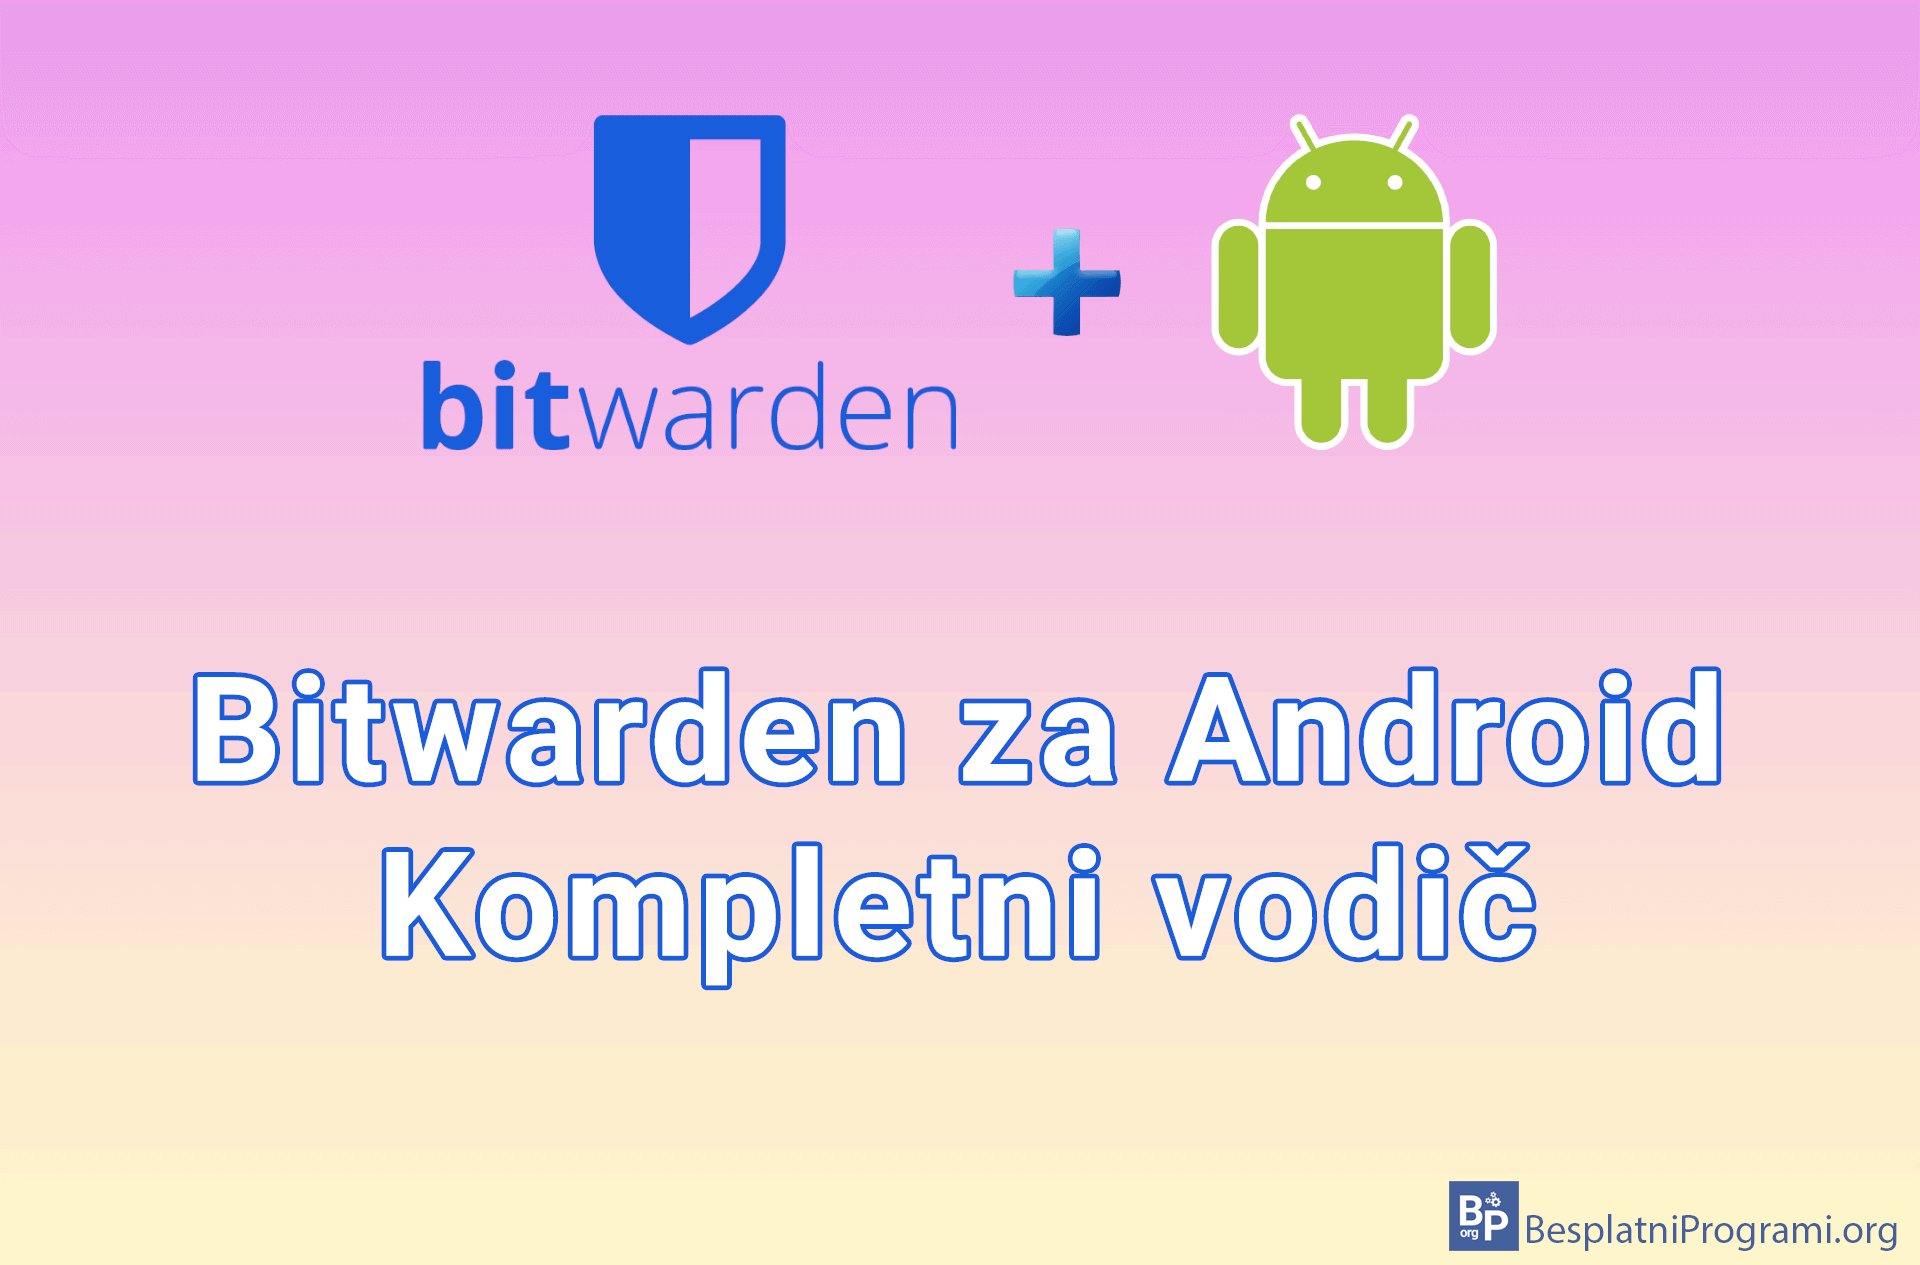 Bitwarden za Android - kompletni vodič